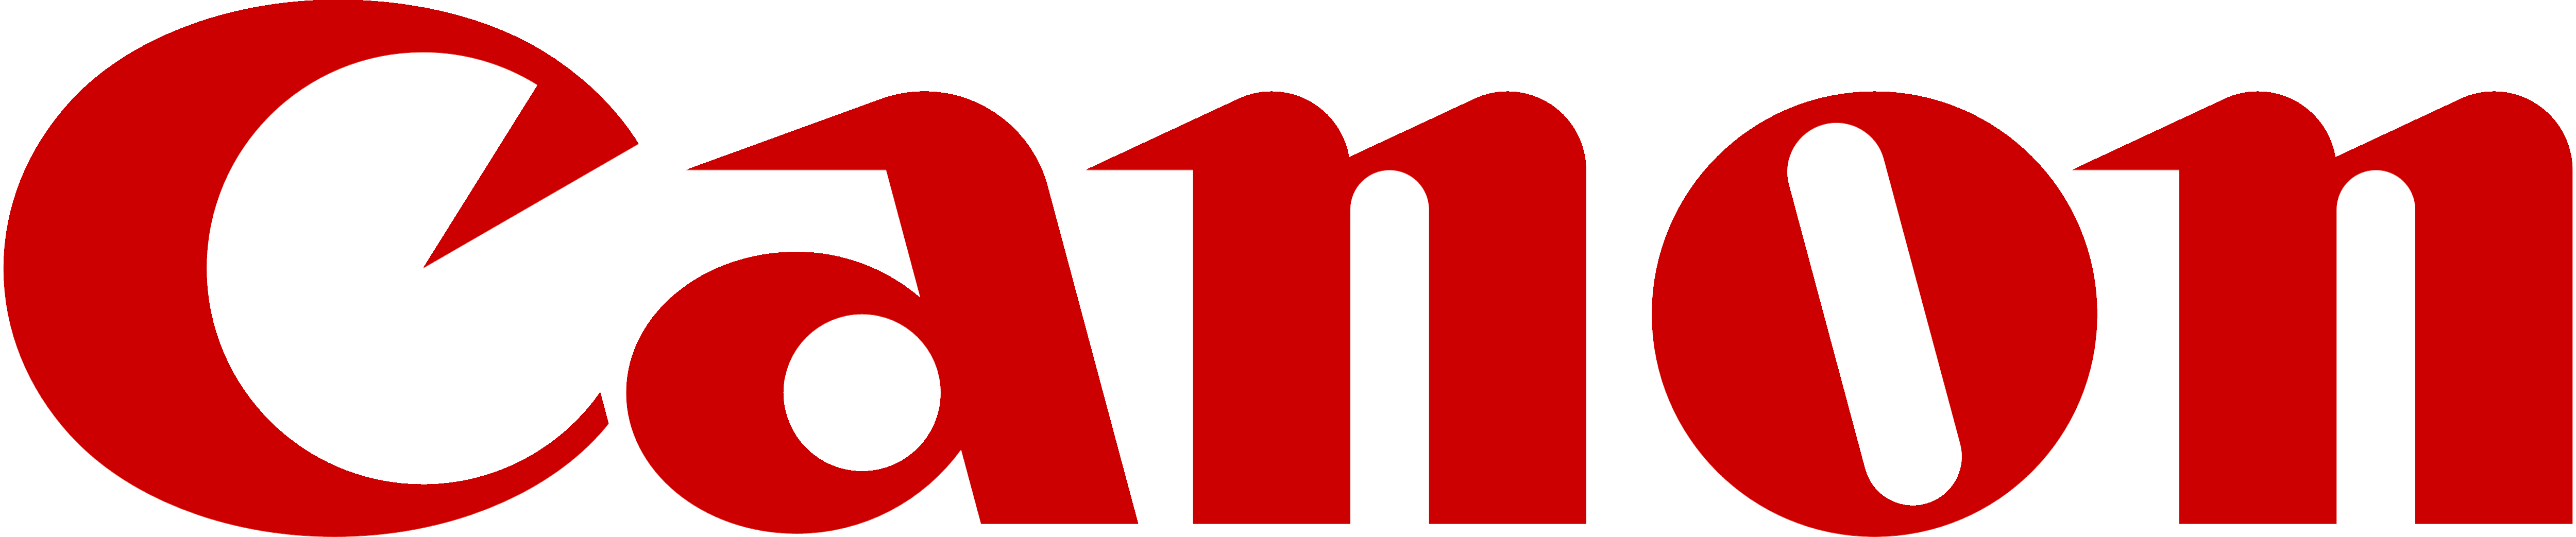 Canon EOS Logo - Canon – Logos Download